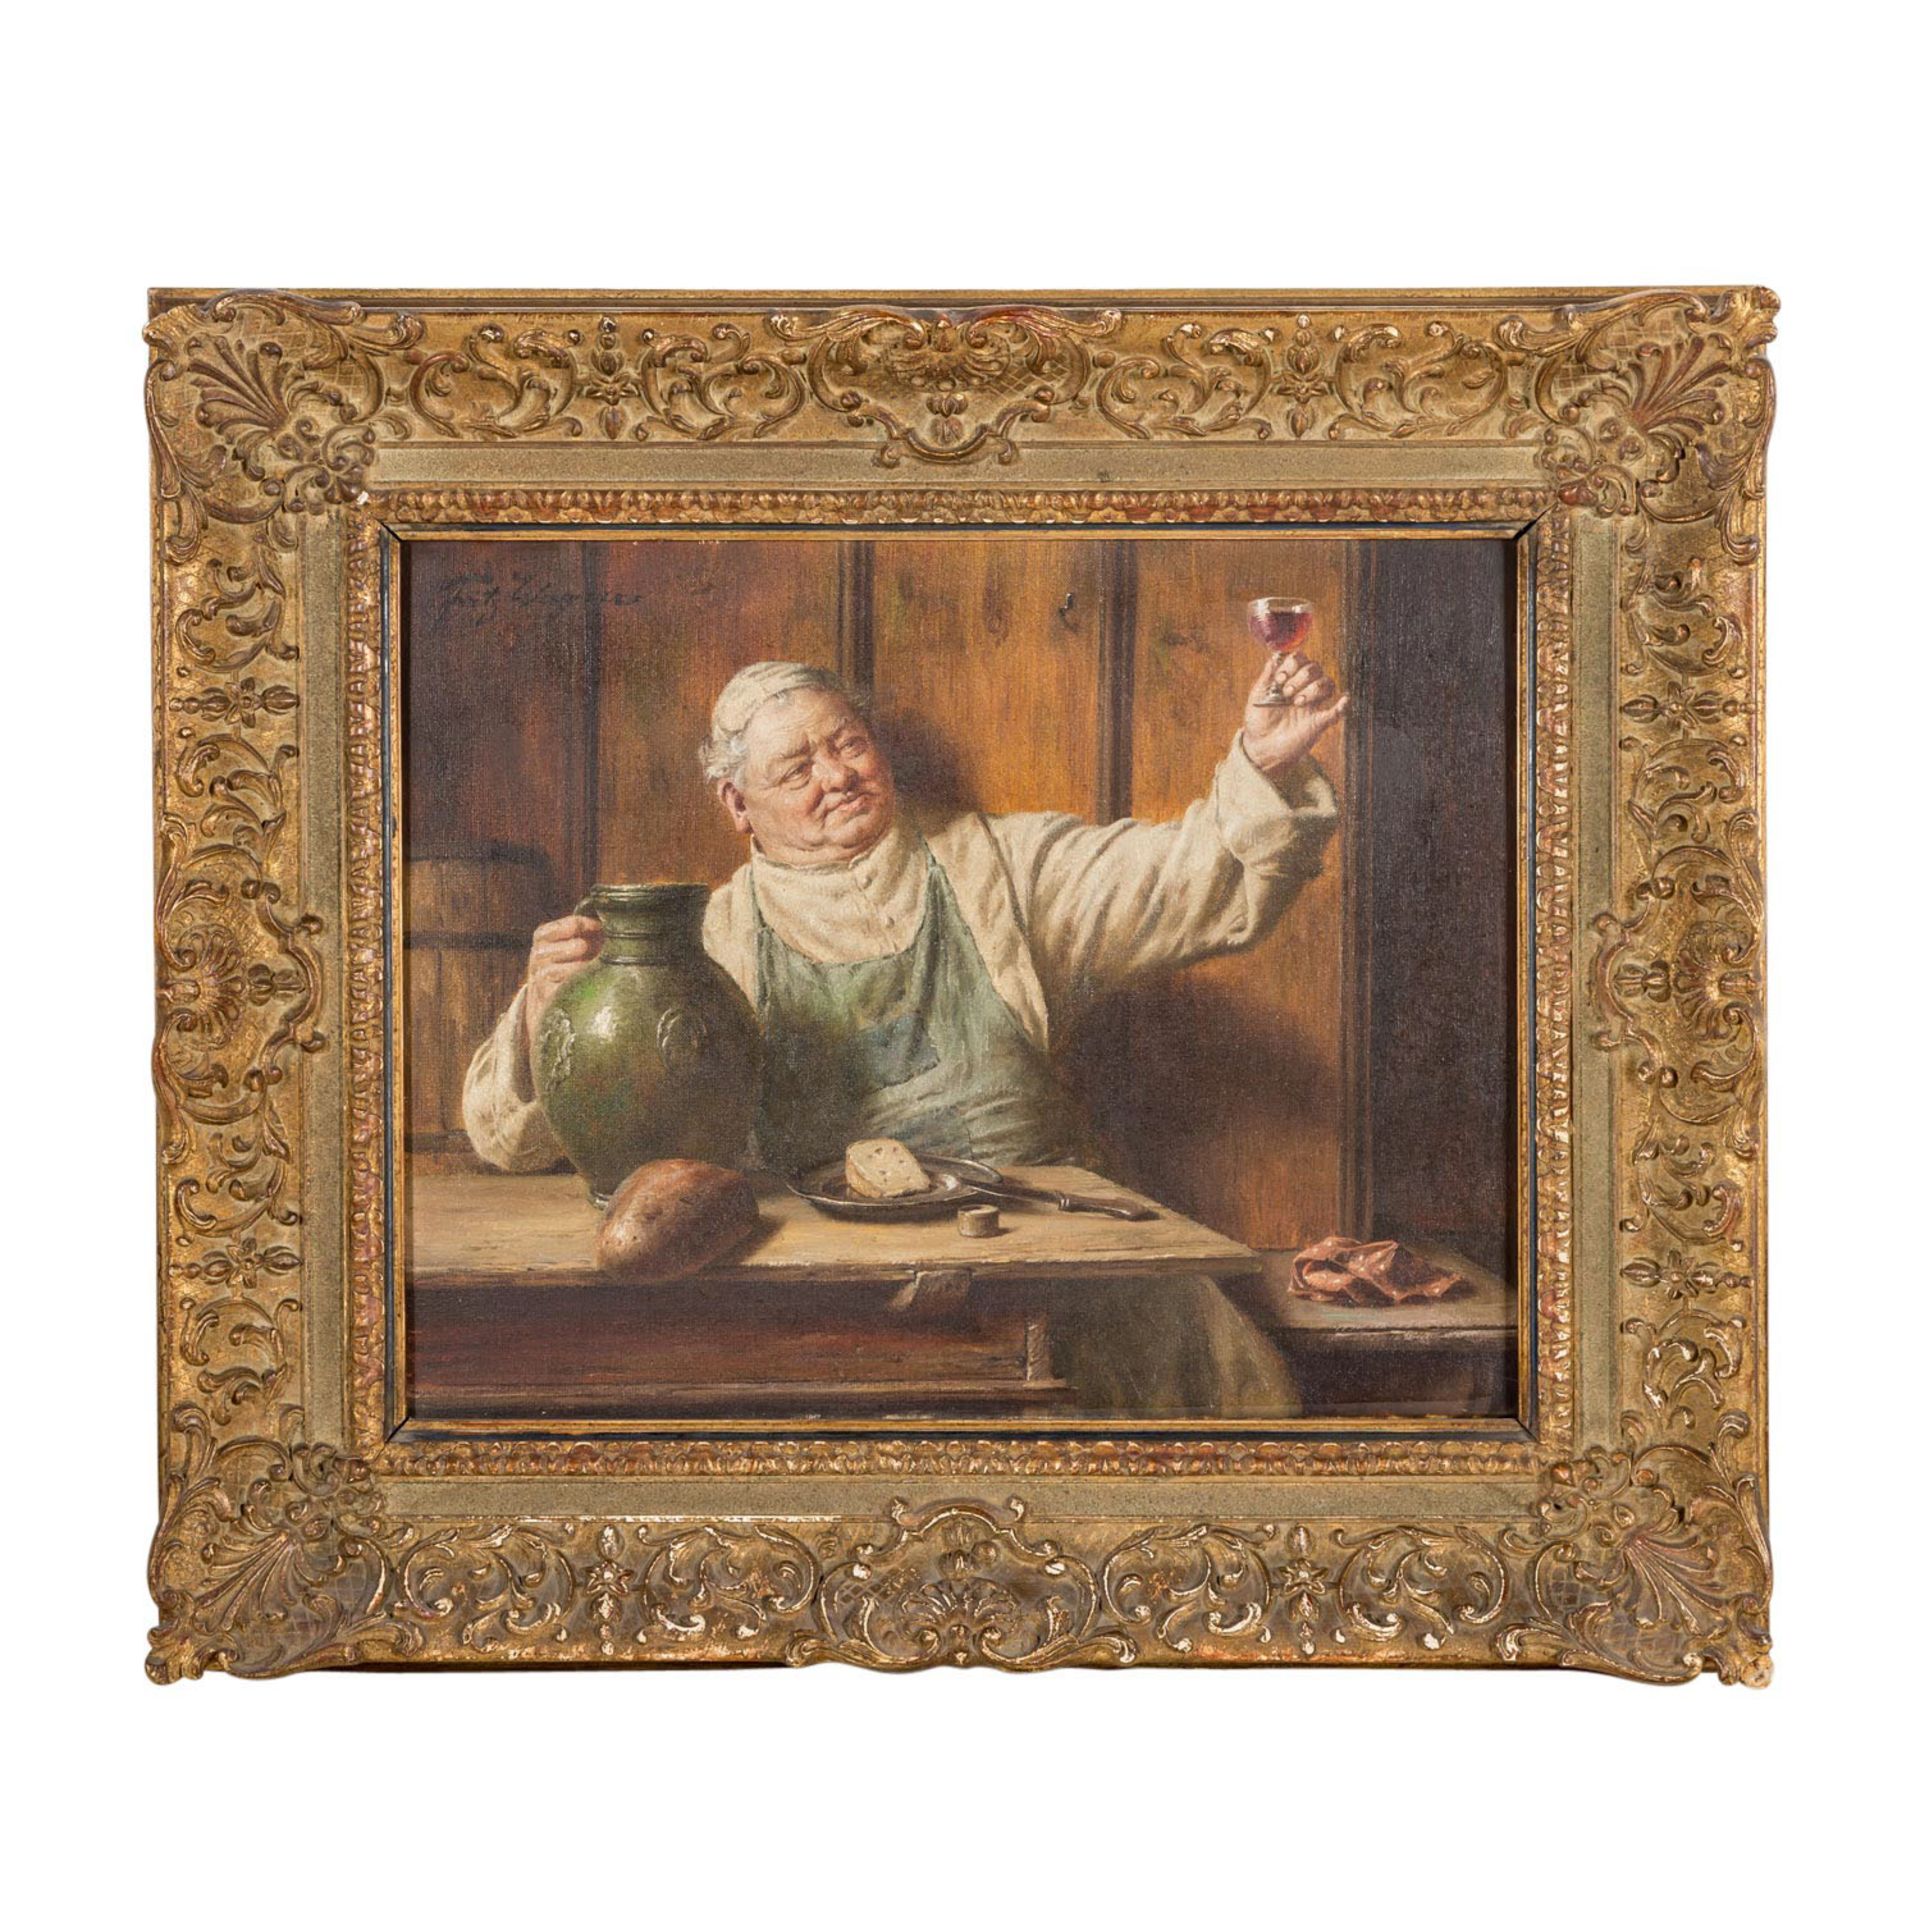 WAGNER, FRITZ (1836-1916) "Mönch am Tisch bewundert seinen Wein" - Image 2 of 7